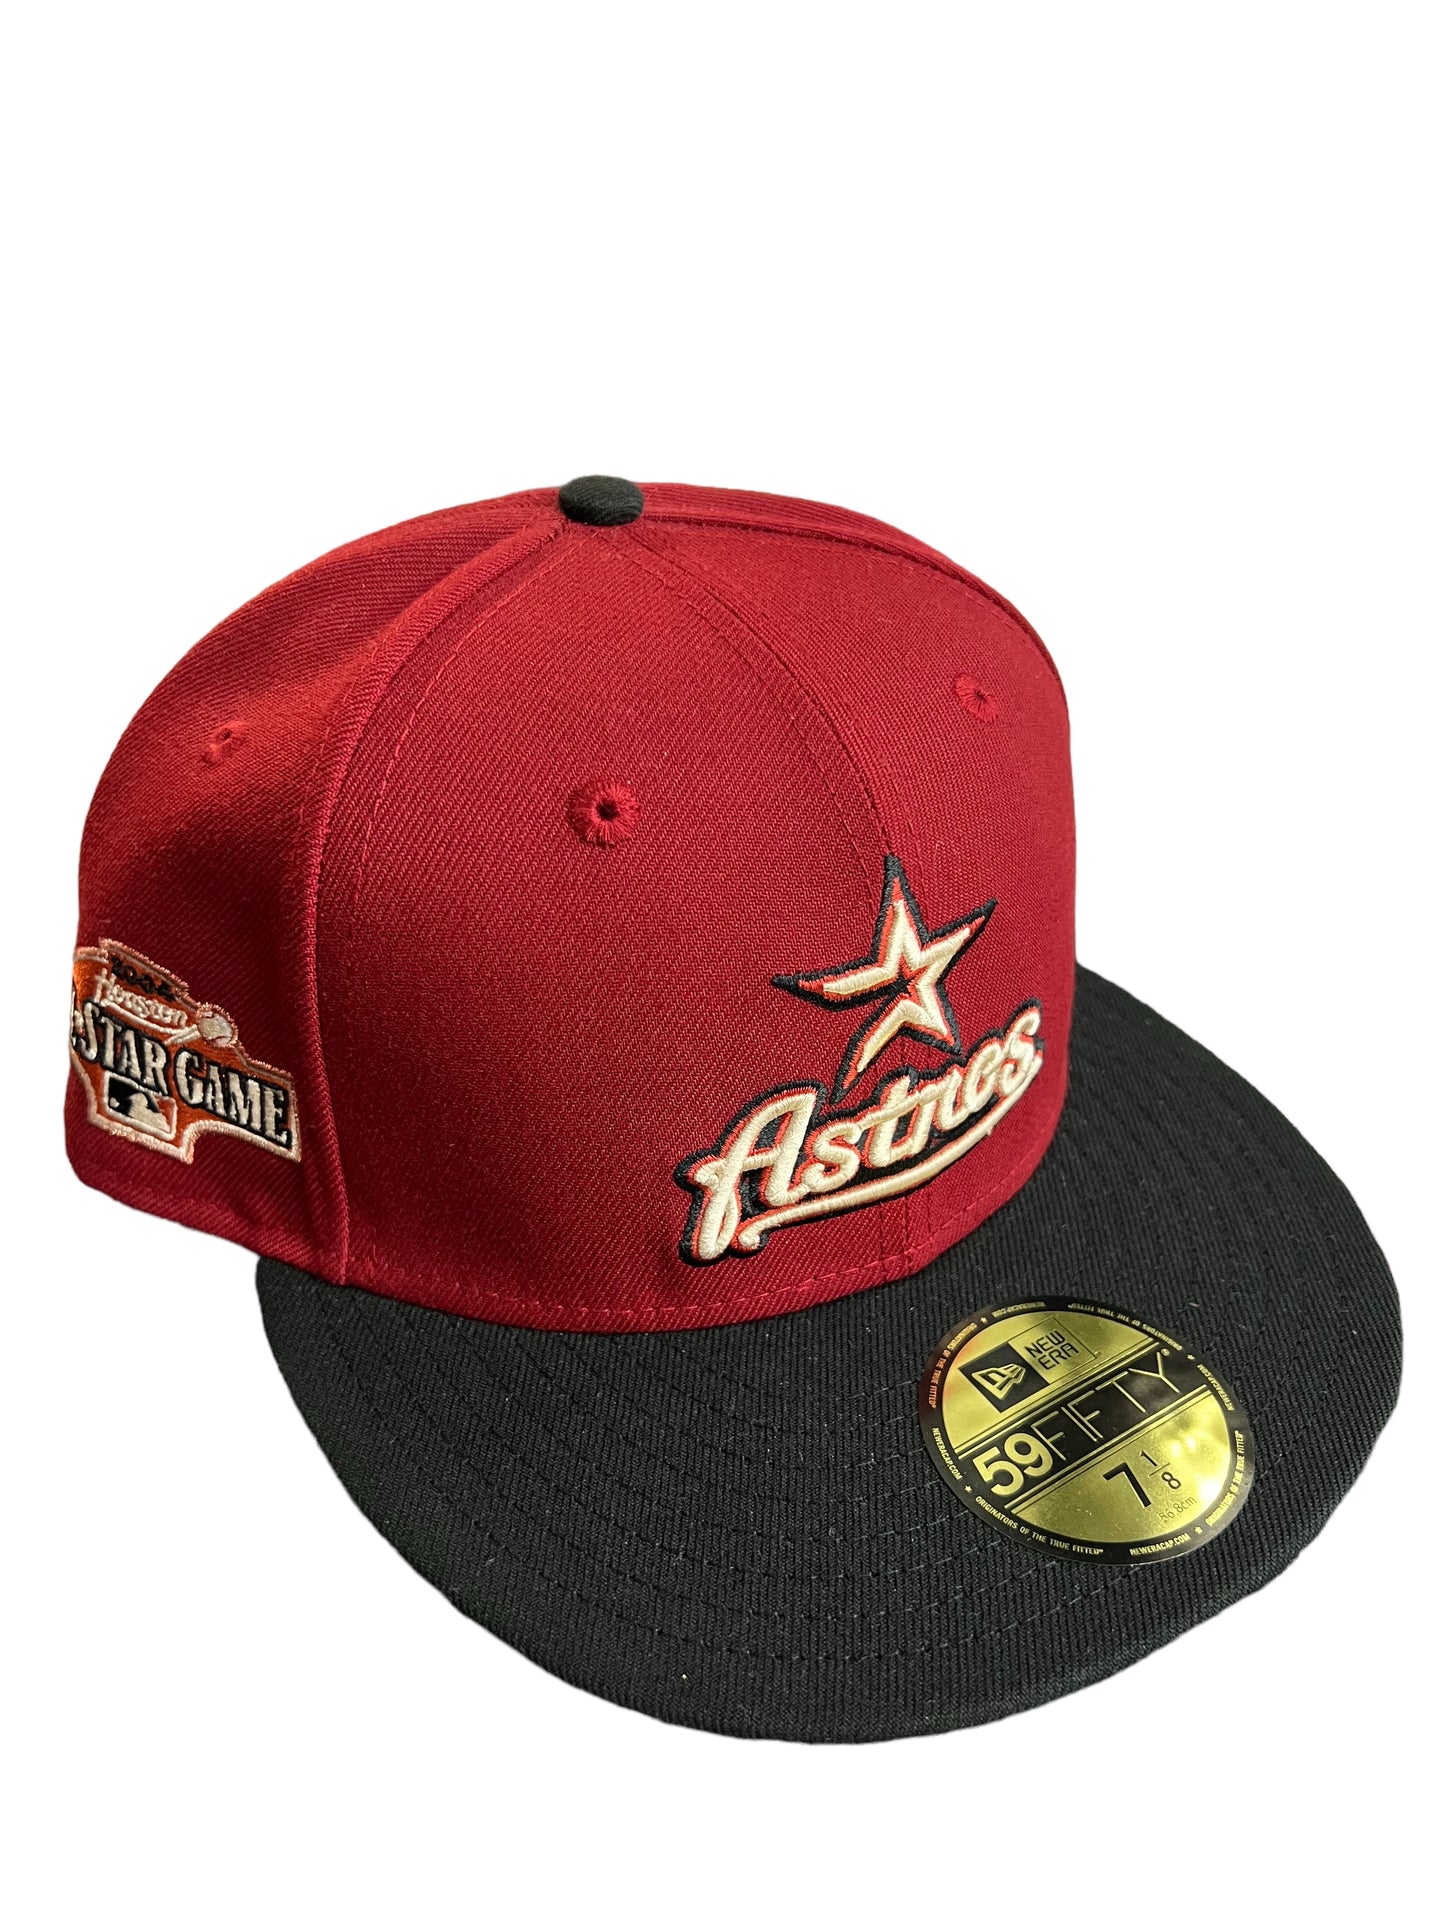 Houston Astros “Brick” Hat